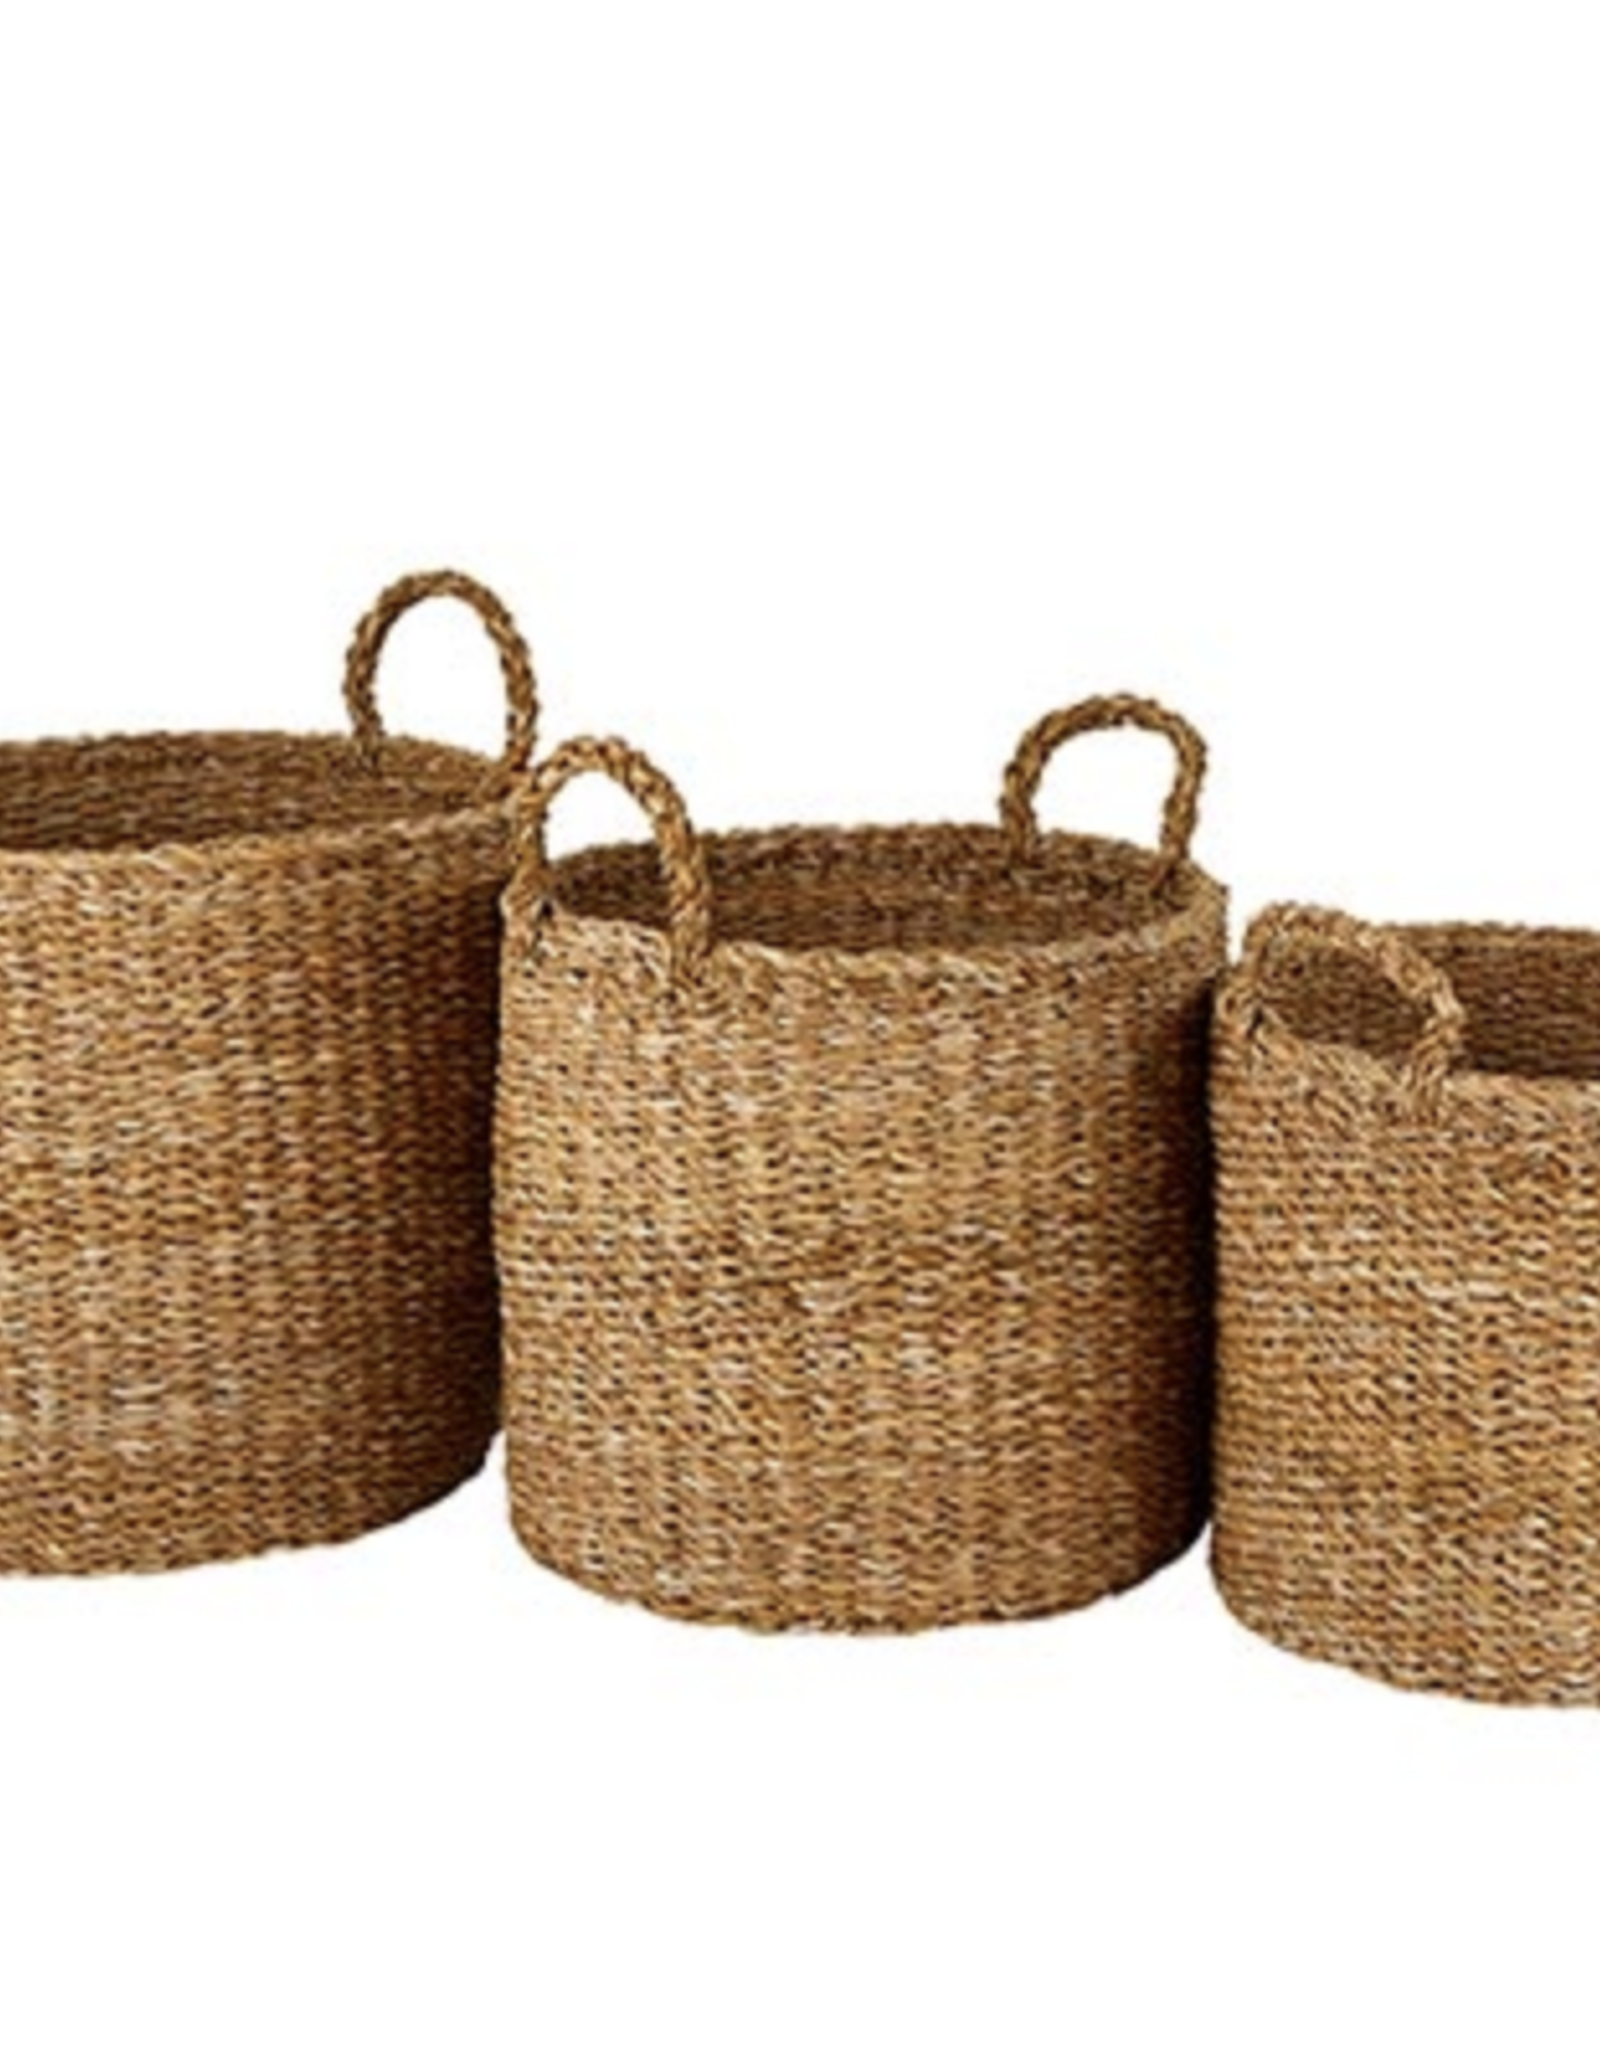 Seagrass Round Basket w/ Handles